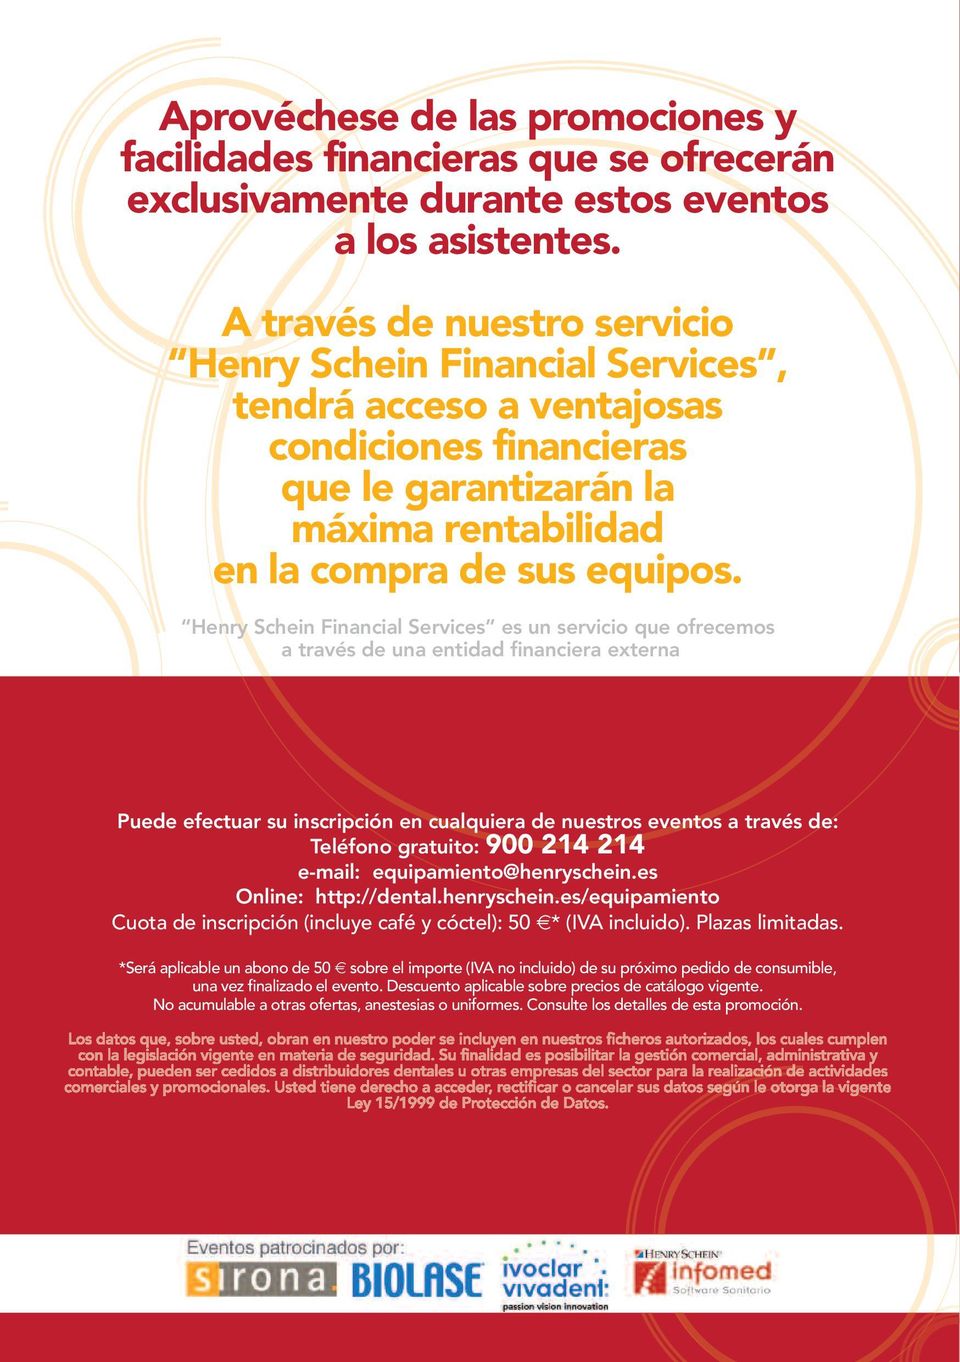 Henry Schein Financial Services es un servicio que ofrecemos a través de una entidad financiera externa Puede efectuar su inscripción en cualquiera de nuestros eventos a través de: Teléfono gratuito: